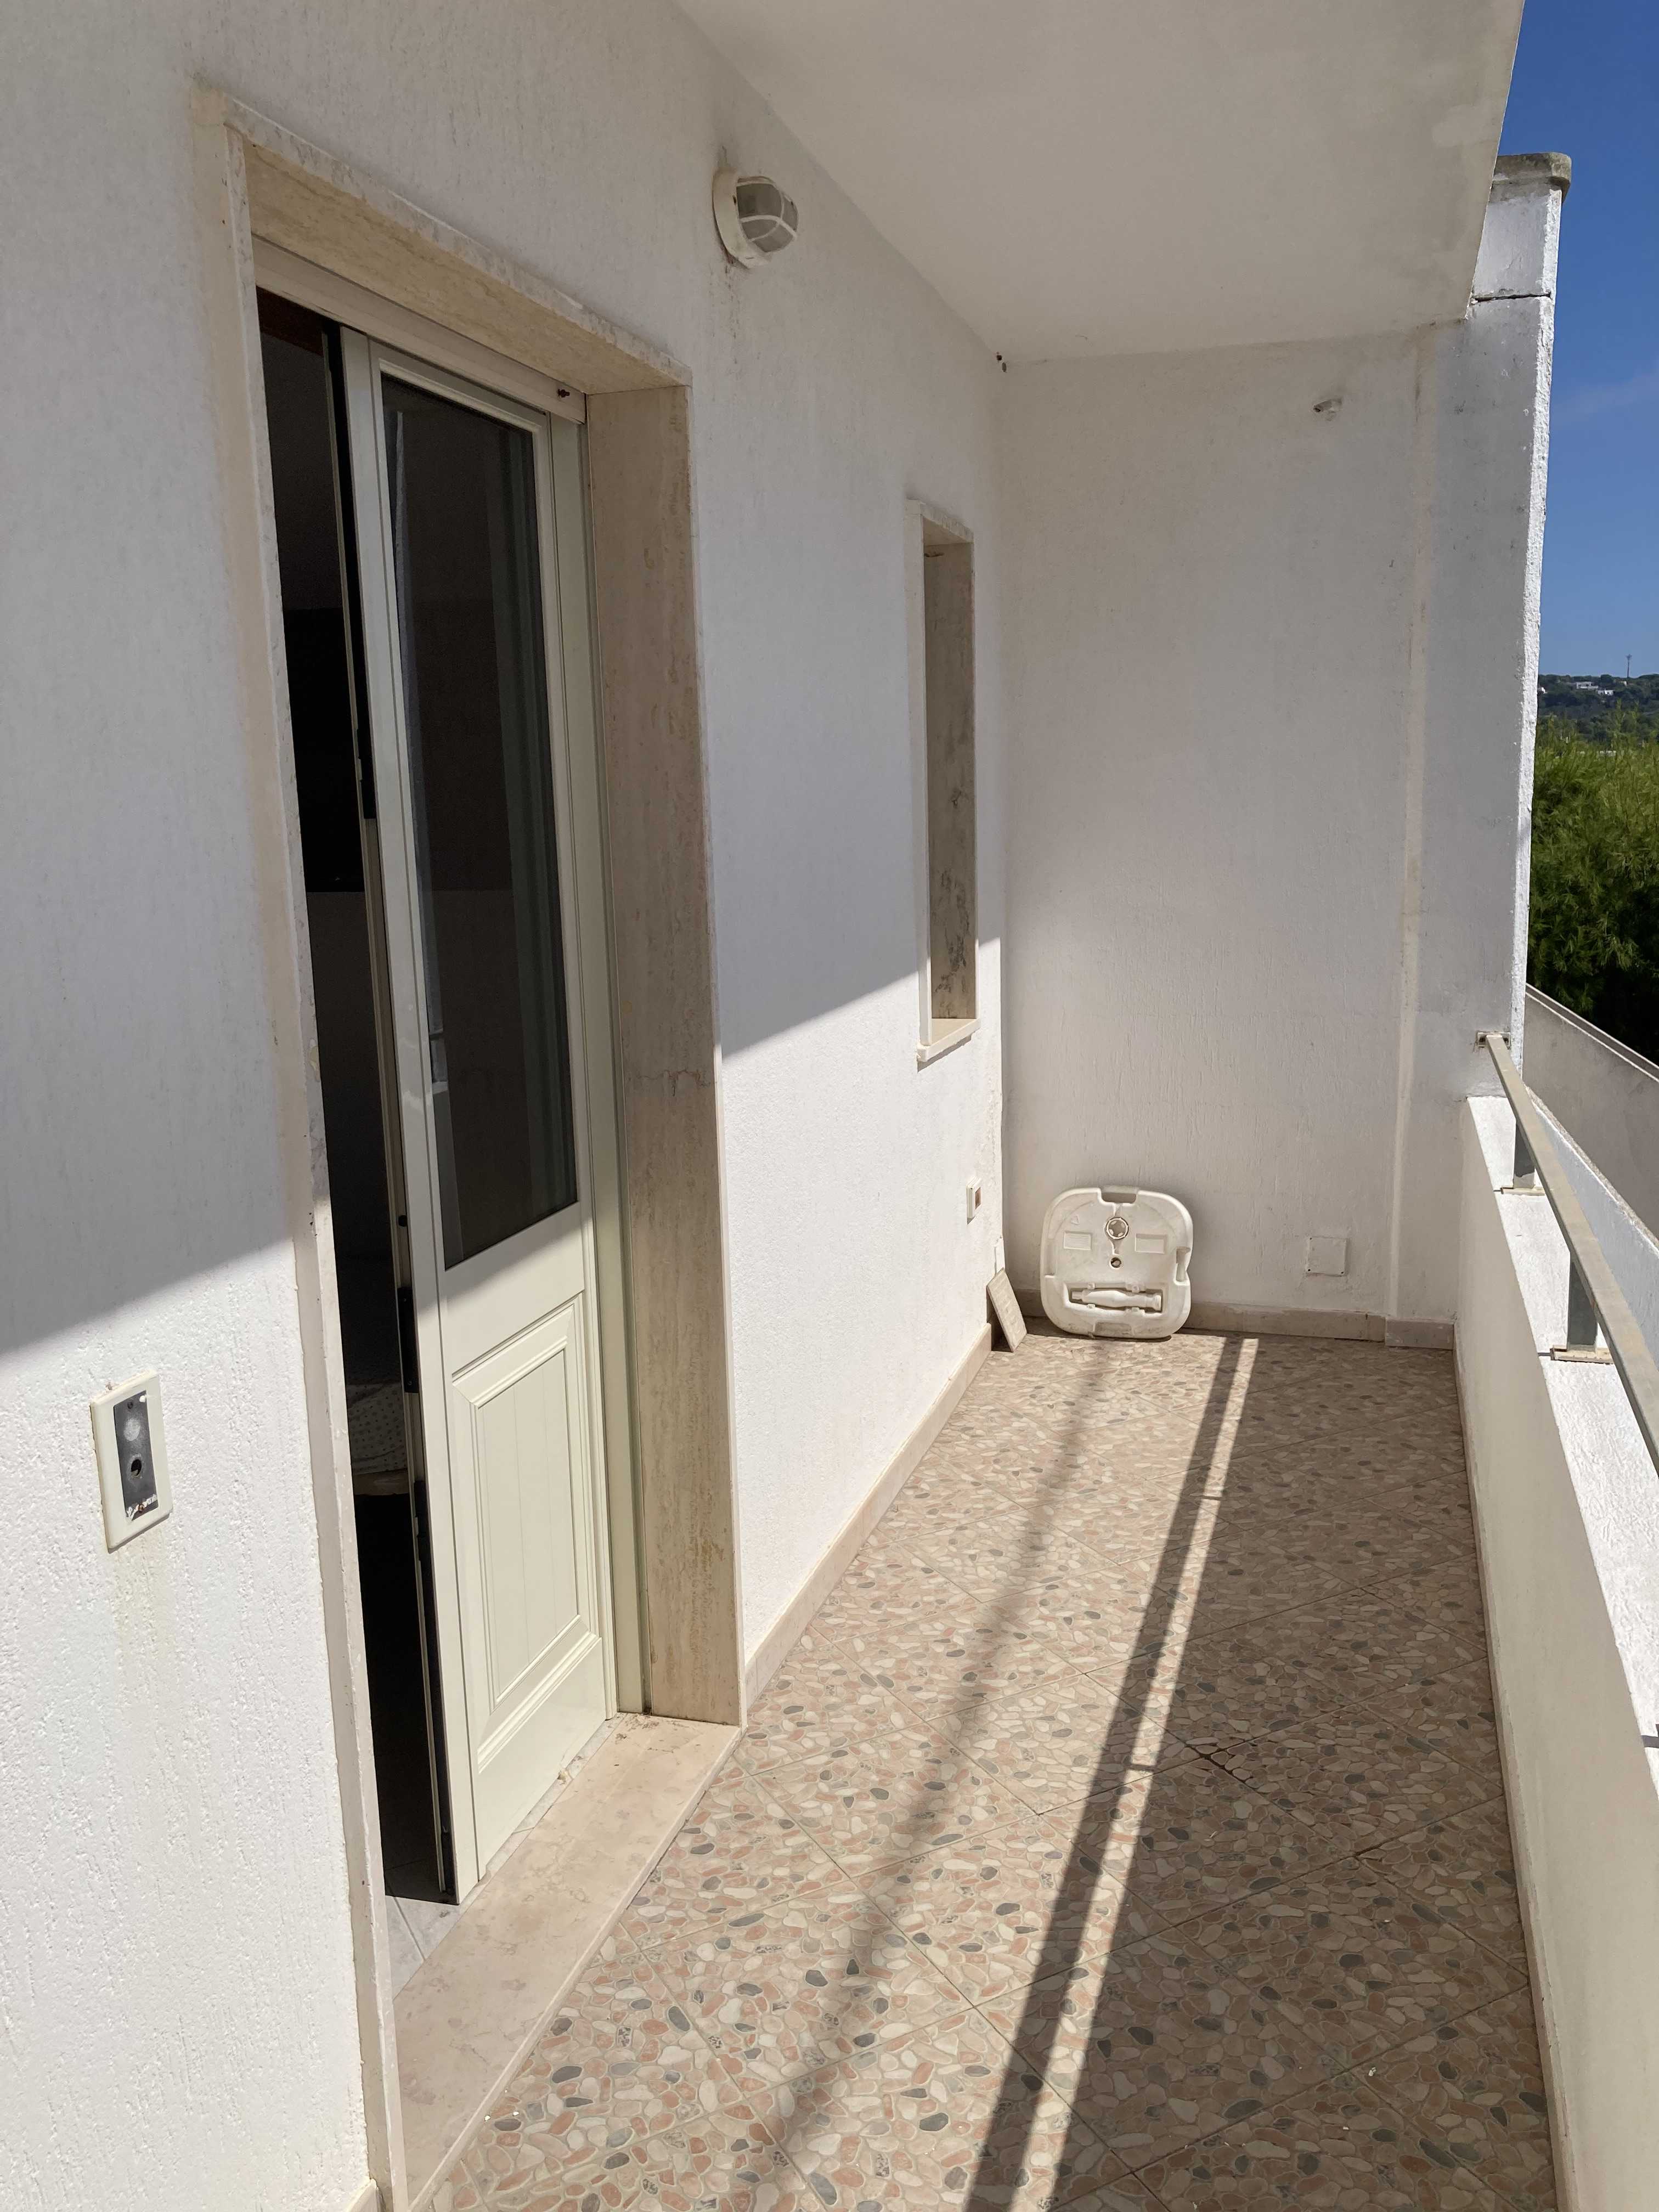 Vendite Salento: Vendita appartamento (Castrignano del Capo) - balcone